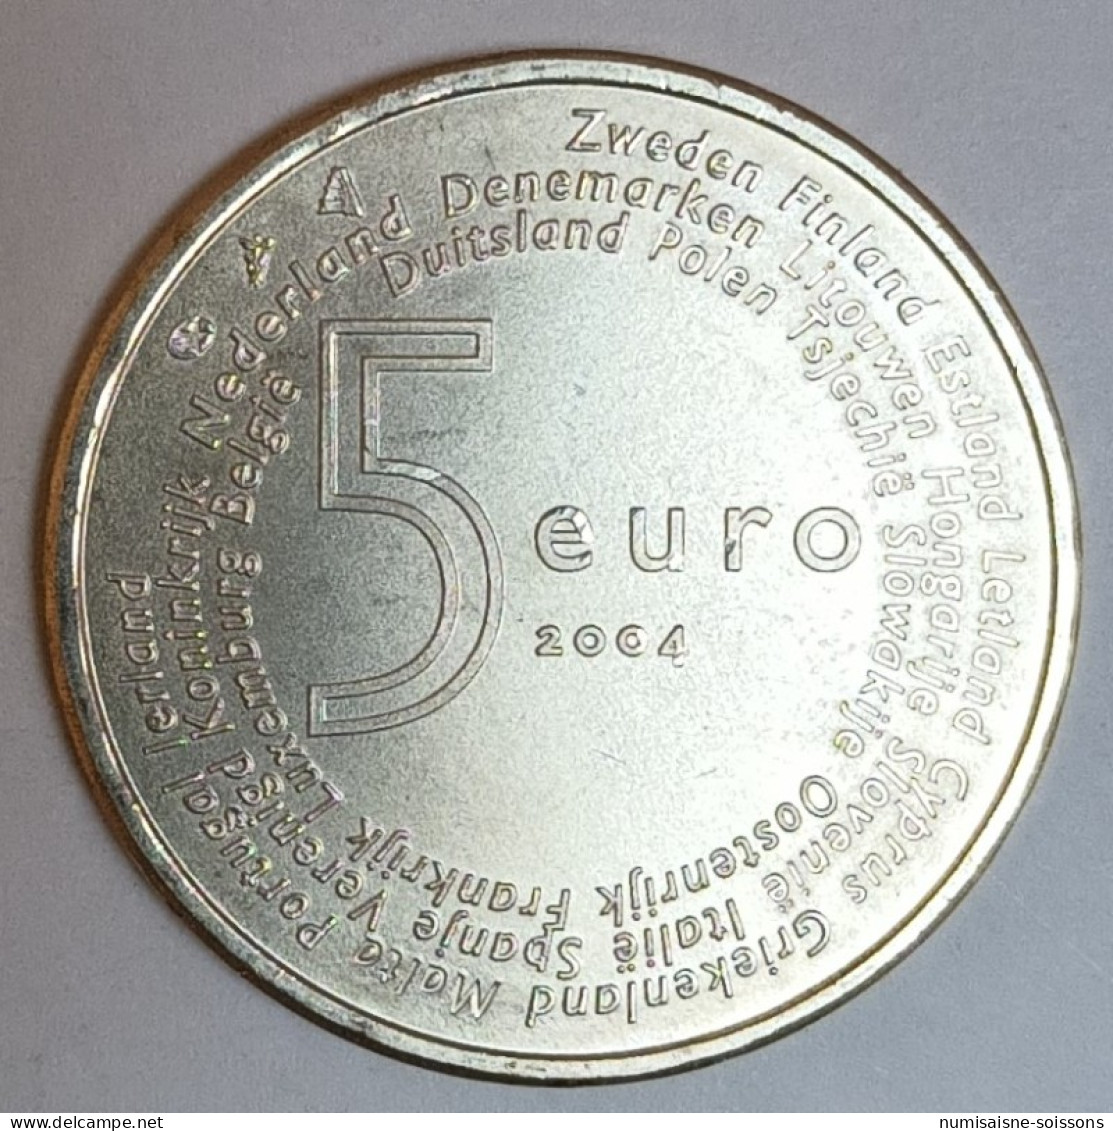 PAYS BAS - KM 252 - 5 EURO 2004 - ELARGISSEMENT DE L'UNION EUROPEENNE - ARGENT - SPL - Niederlande